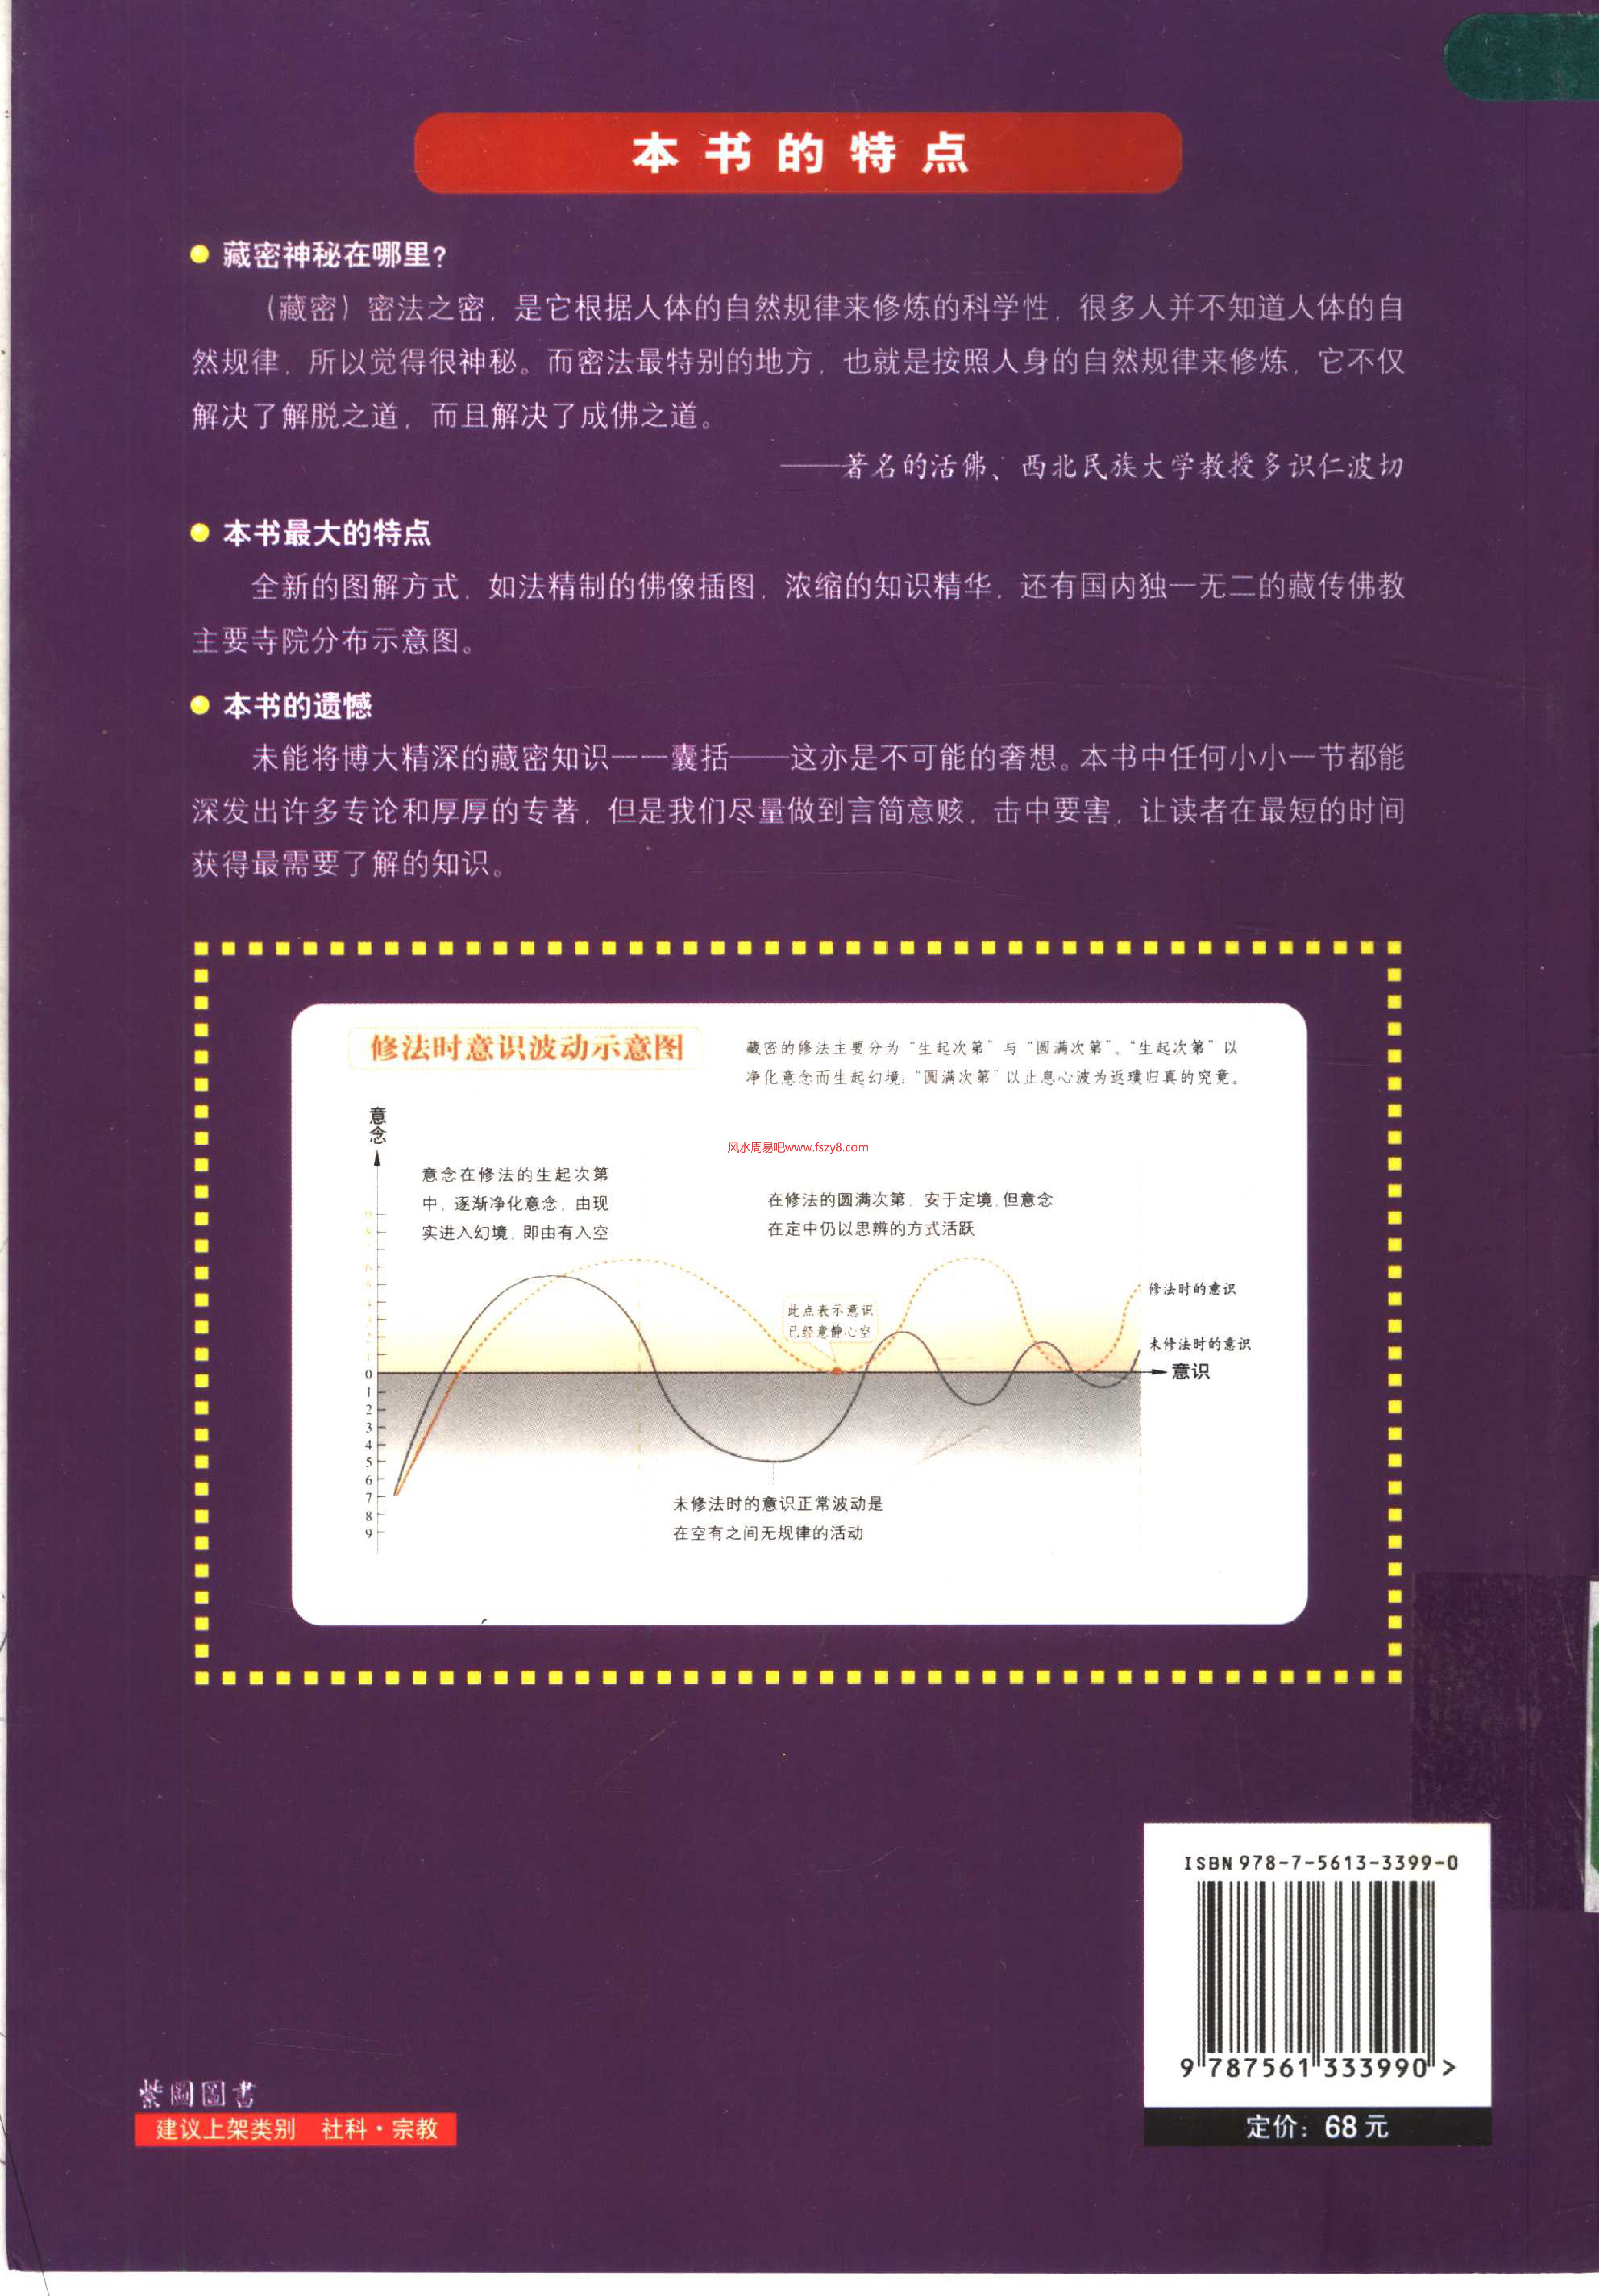 图解西藏密宗PDF电子书籍324页 图解西藏密宗书籍扫描(图2)